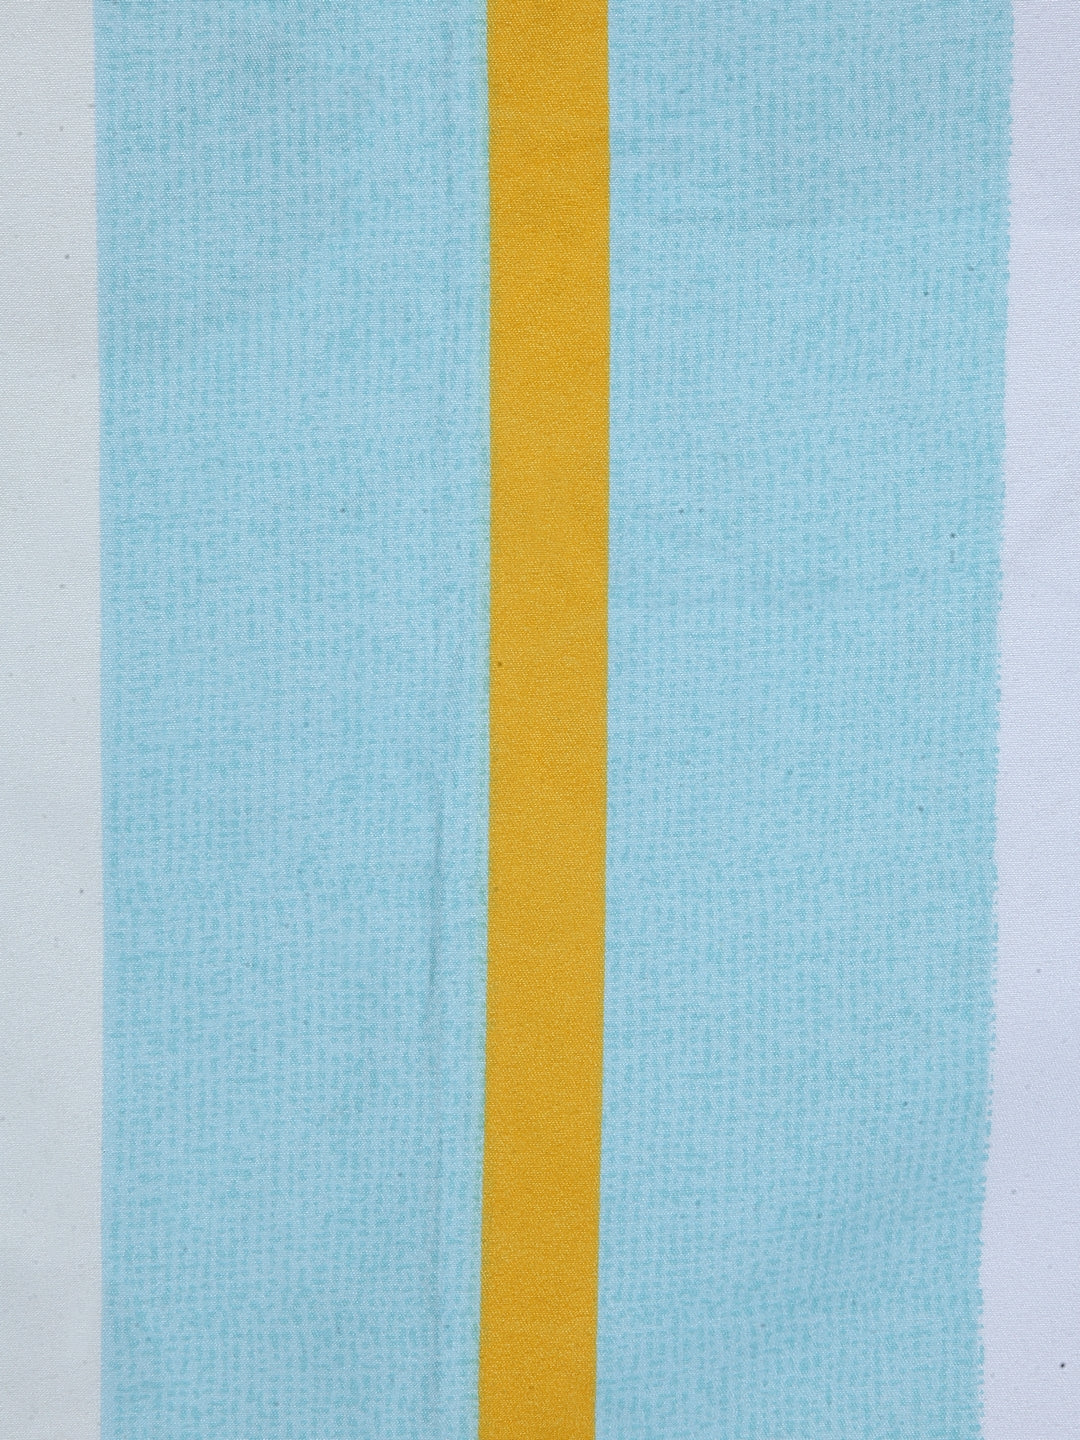 Arrabi Multi Stripes TC Cotton Blend Single Size Bedsheet with 1 Pillow Cover (220 x 150 cm)